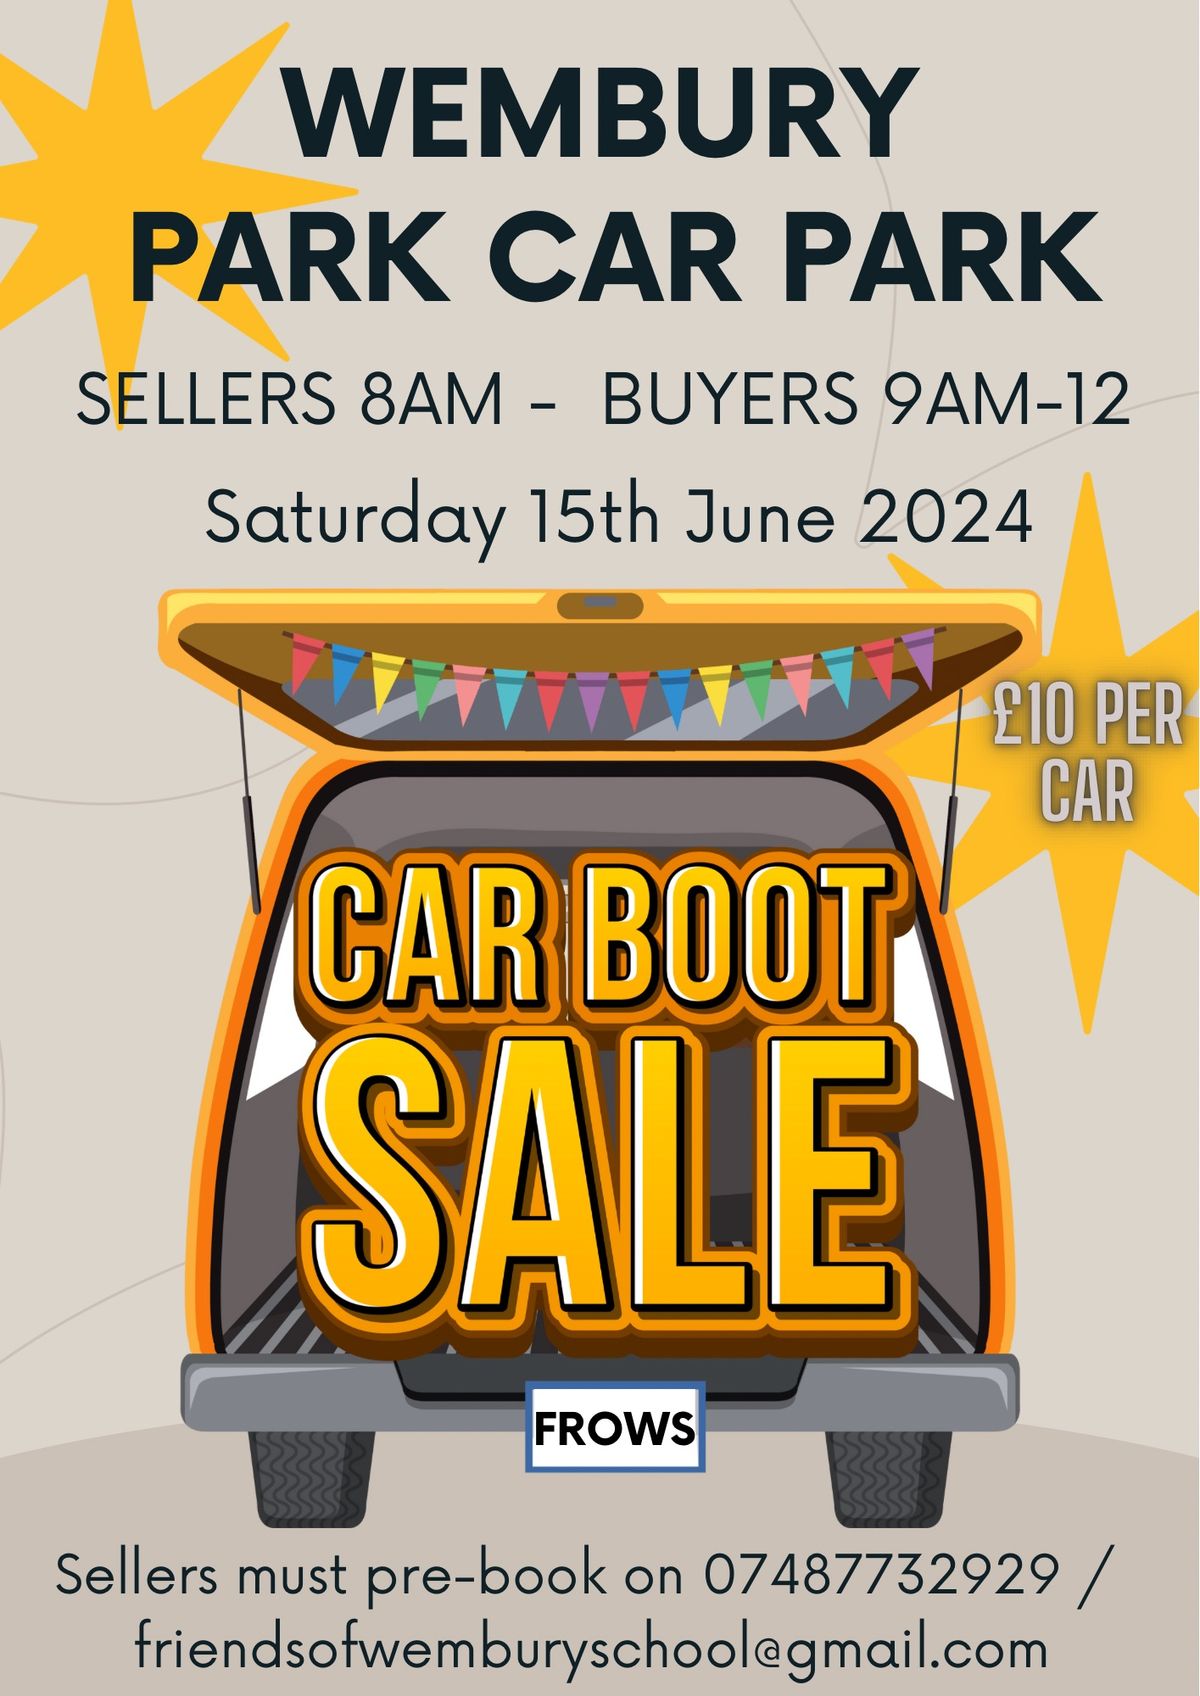 Car Boot Sale - Saturday 15th June 2024